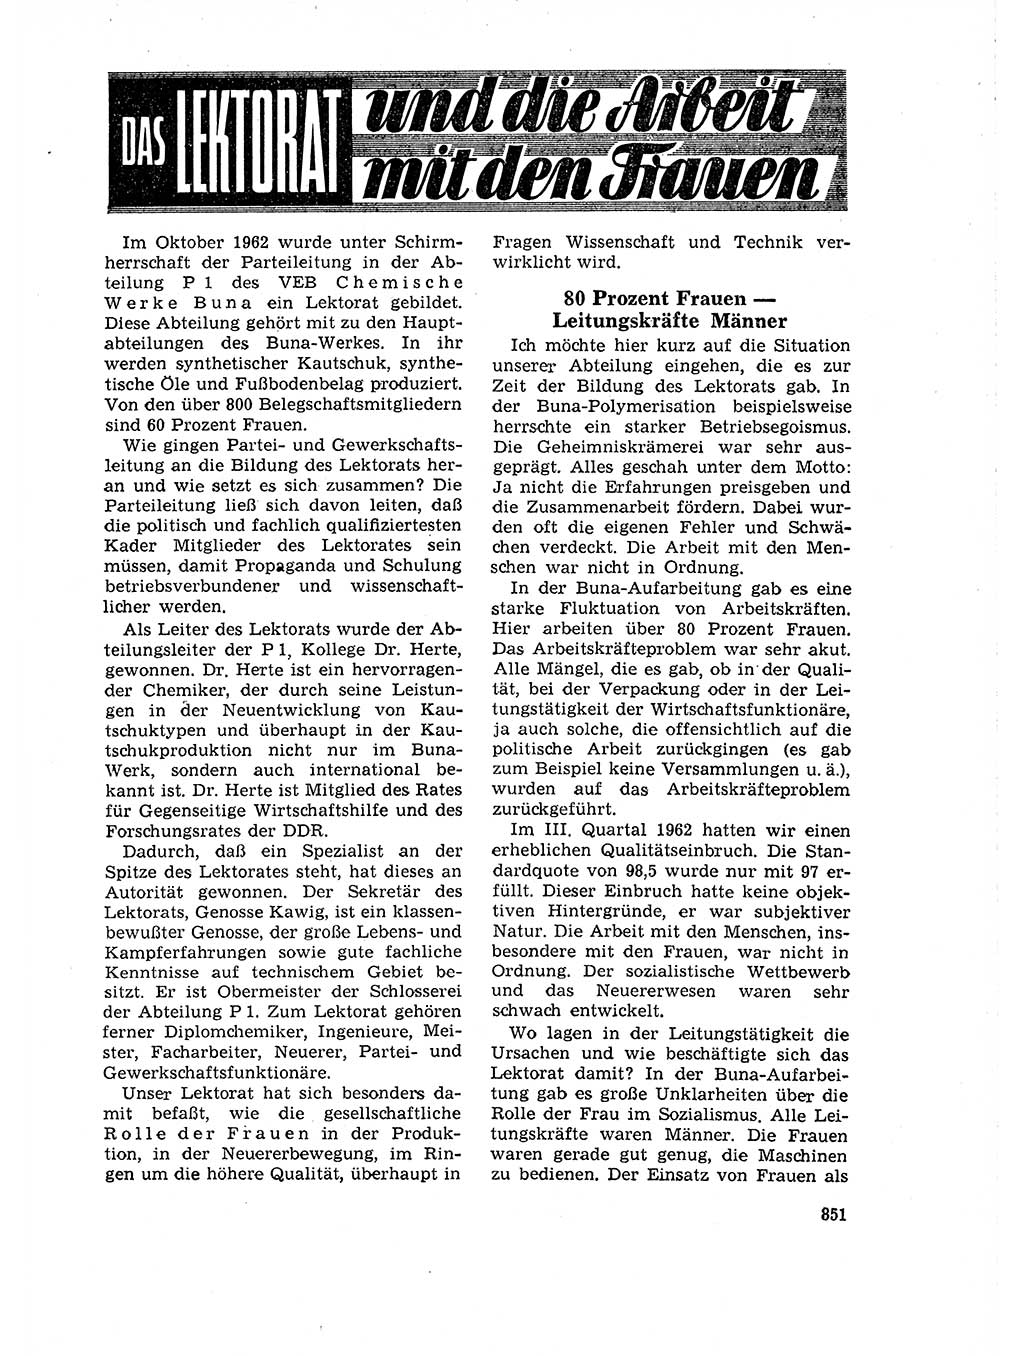 Neuer Weg (NW), Organ des Zentralkomitees (ZK) der SED (Sozialistische Einheitspartei Deutschlands) für Fragen des Parteilebens, 18. Jahrgang [Deutsche Demokratische Republik (DDR)] 1963, Seite 851 (NW ZK SED DDR 1963, S. 851)